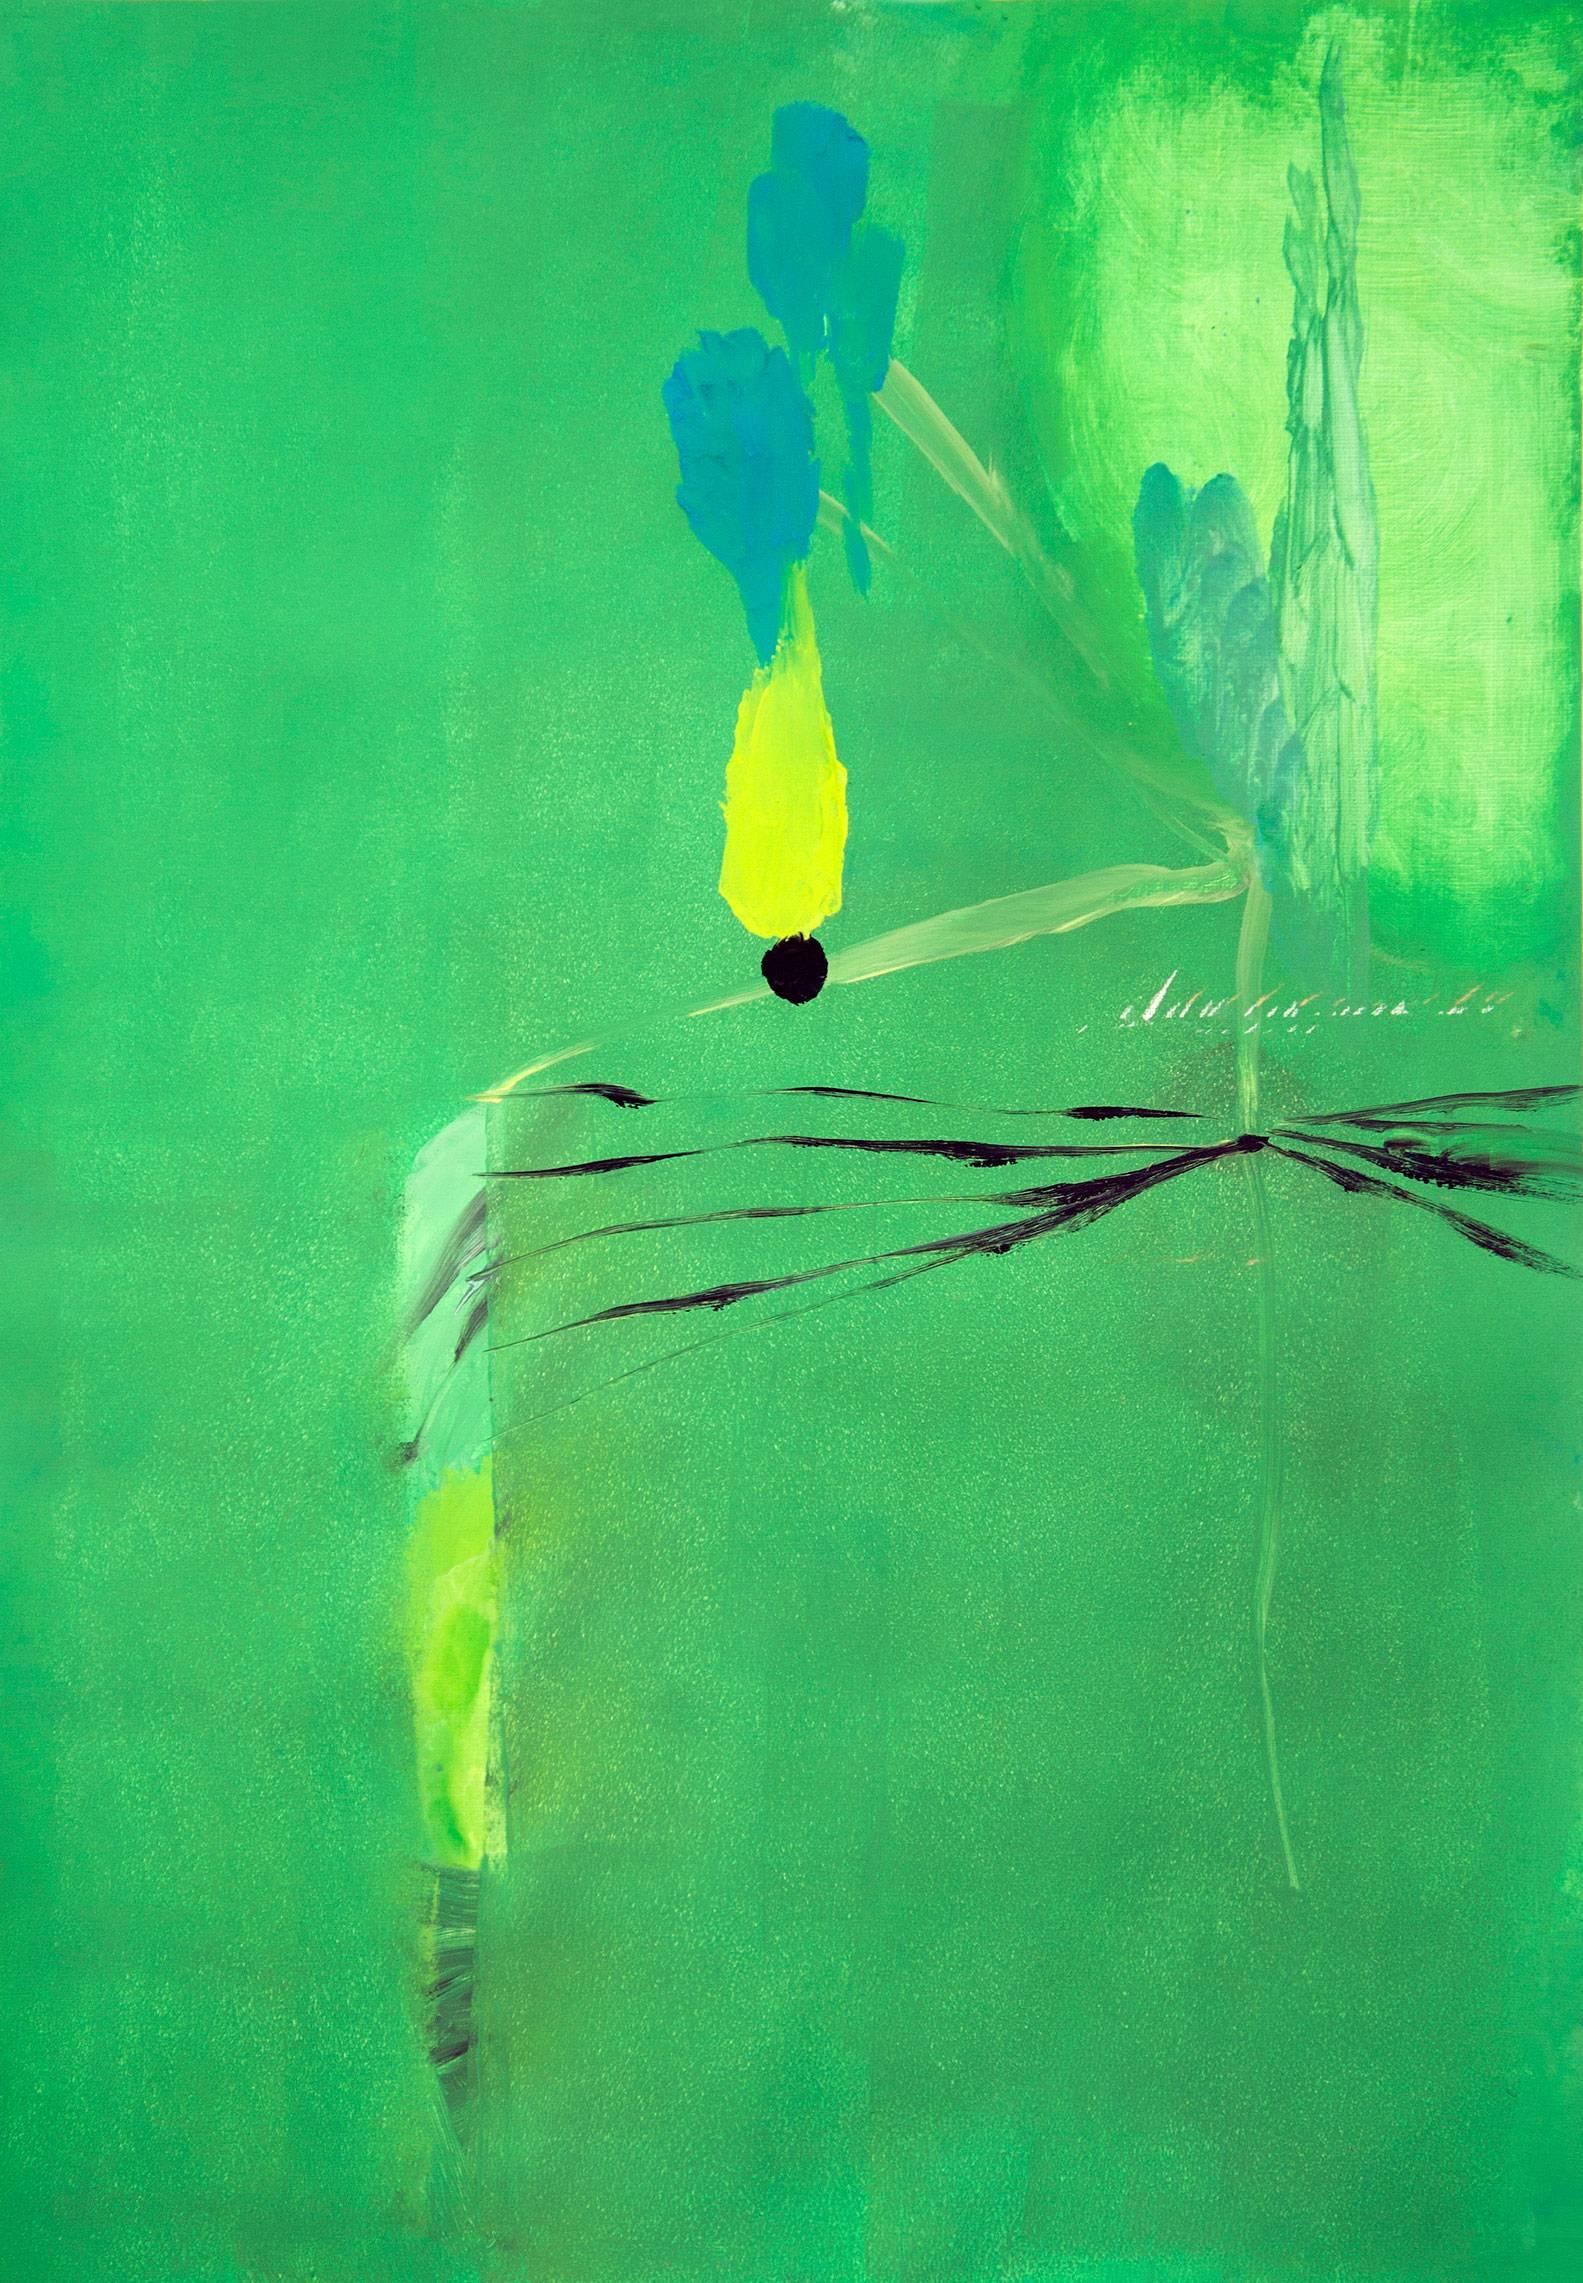 Dies ist ein abstraktes Öl auf Papier. Der Hintergrund ist in einem sanften Grün gehalten, das von Formen in leuchtendem Gelb, Hellblau und schwarzen Linien unterbrochen wird, die sich über die rechte Seite des Bildes erstrecken.  

Eduardo Infante